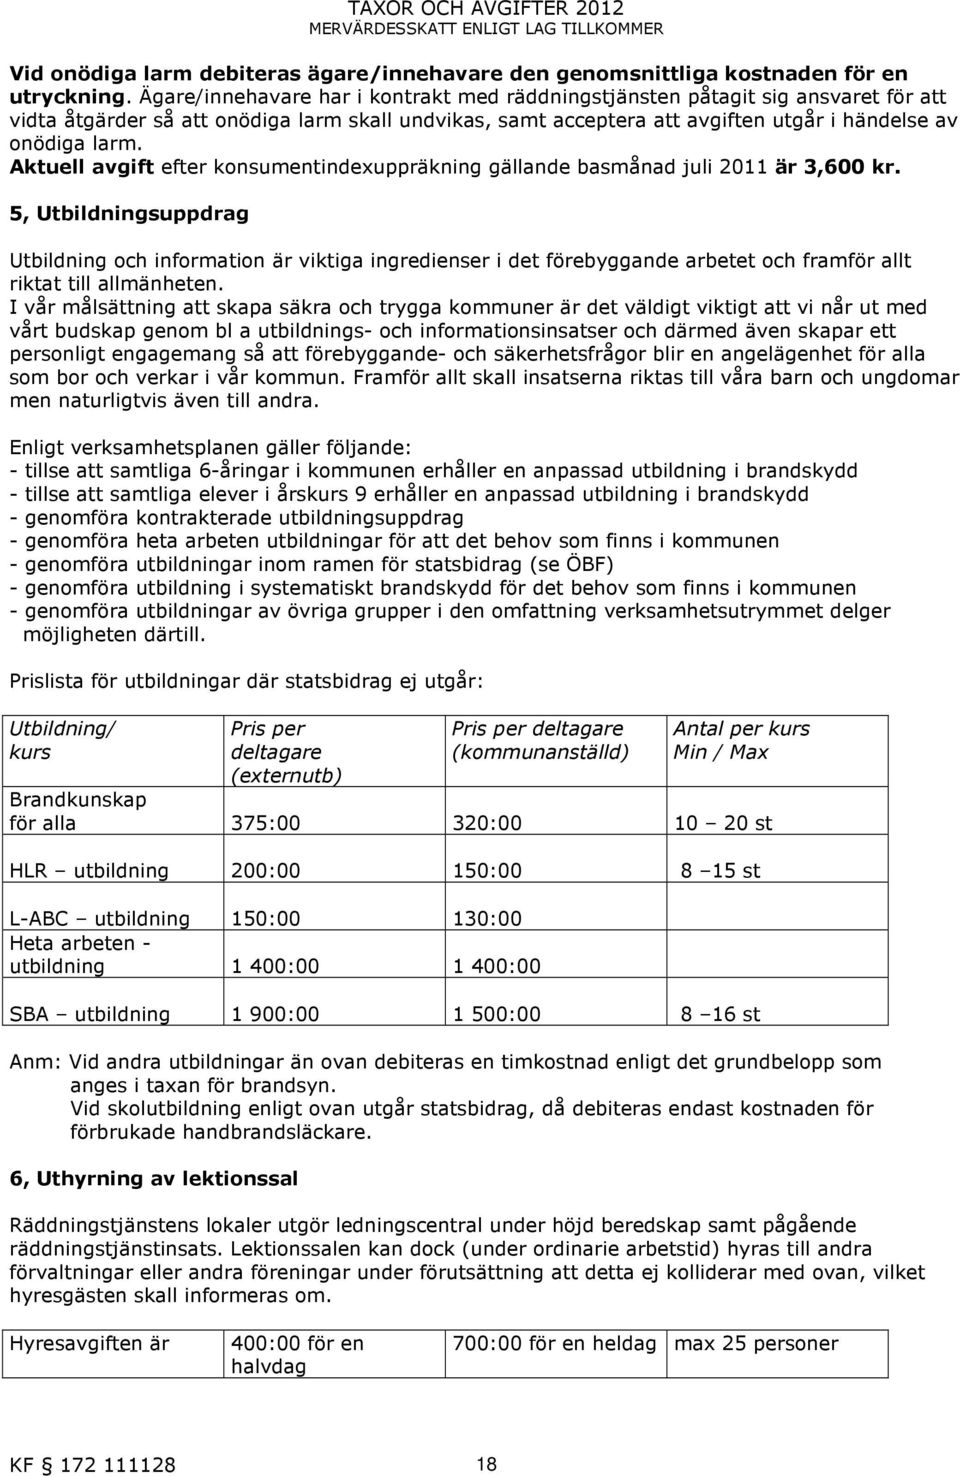 Aktuell avgift efter konsumentindexuppräkning gällande basmånad juli 2011 är 3,600 kr.